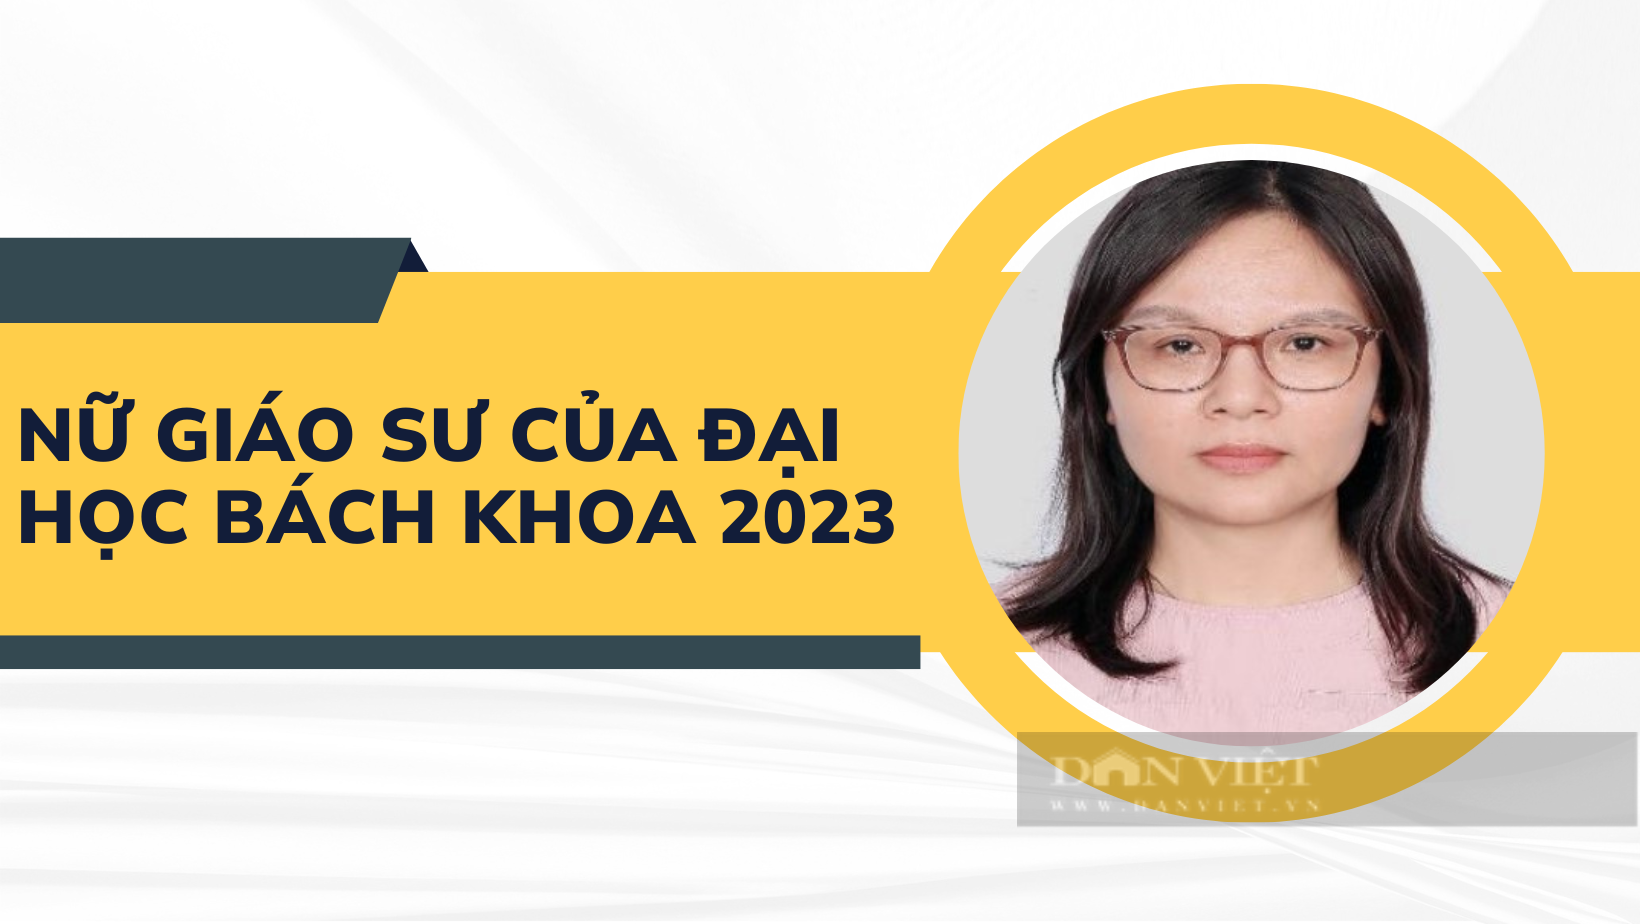 Nữ nhà giáo duy nhất của Đại học Bách khoa Hà Nội đạt chuẩn Giáo sư 2023 là ai? - Ảnh 1.